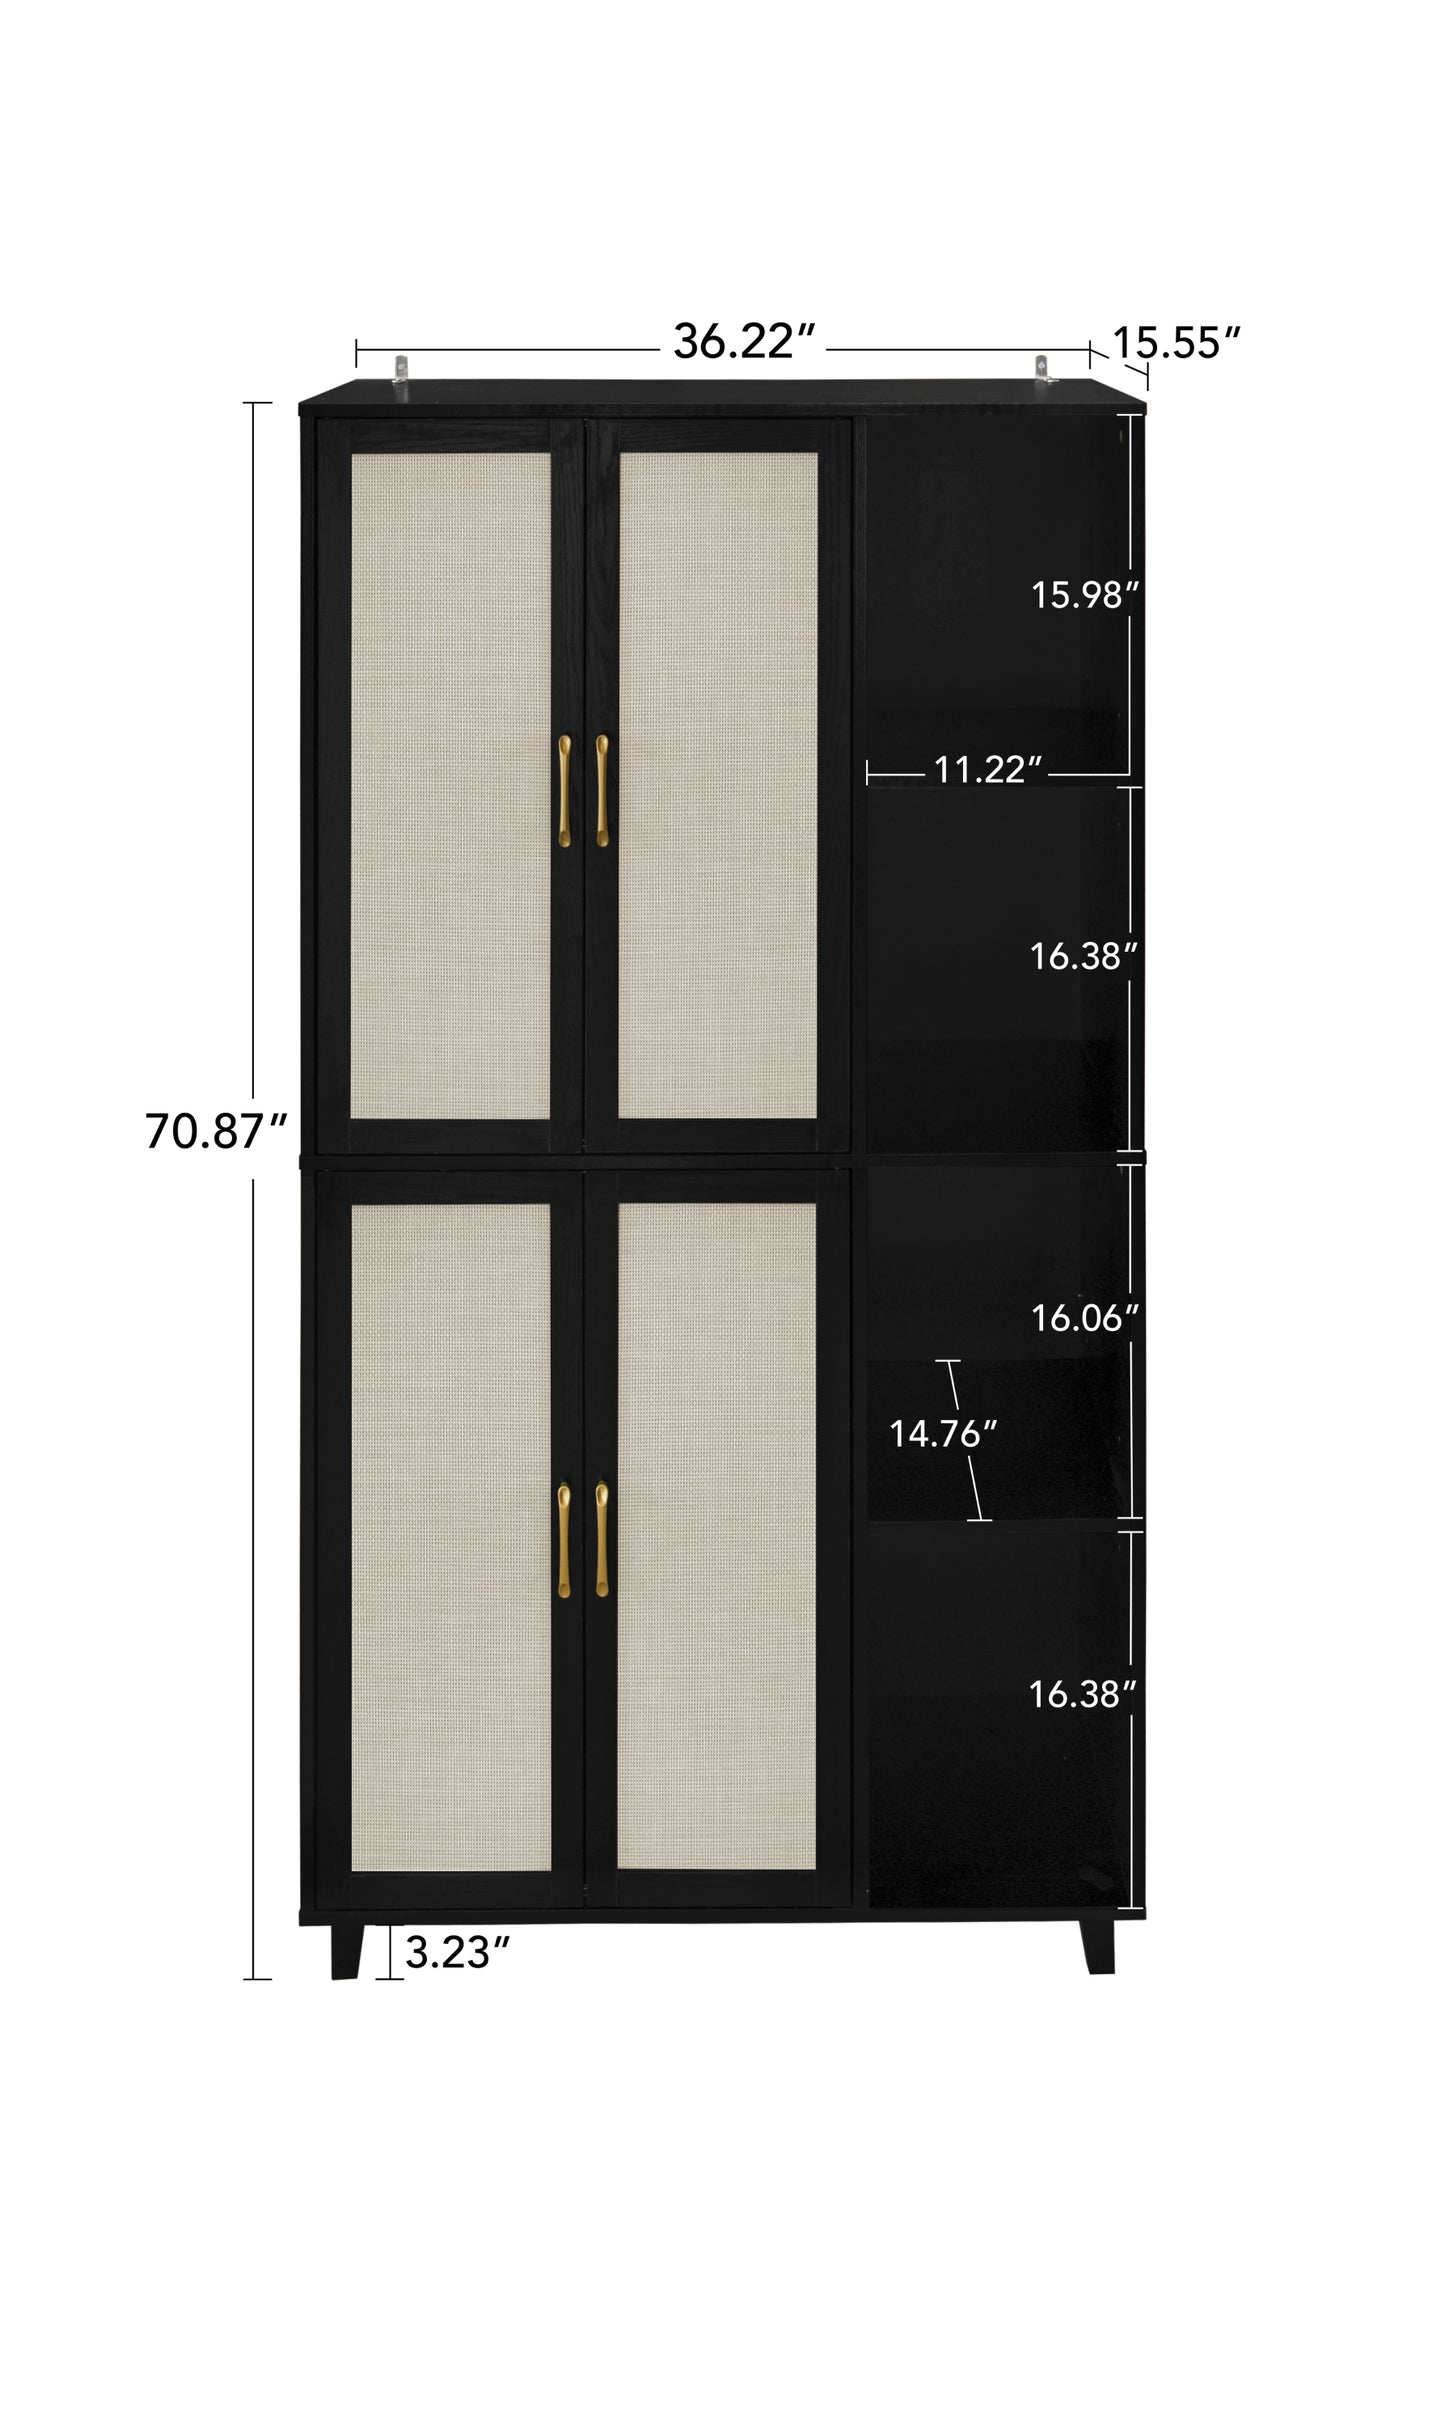 4 Door Cabinet with 4 Shelves